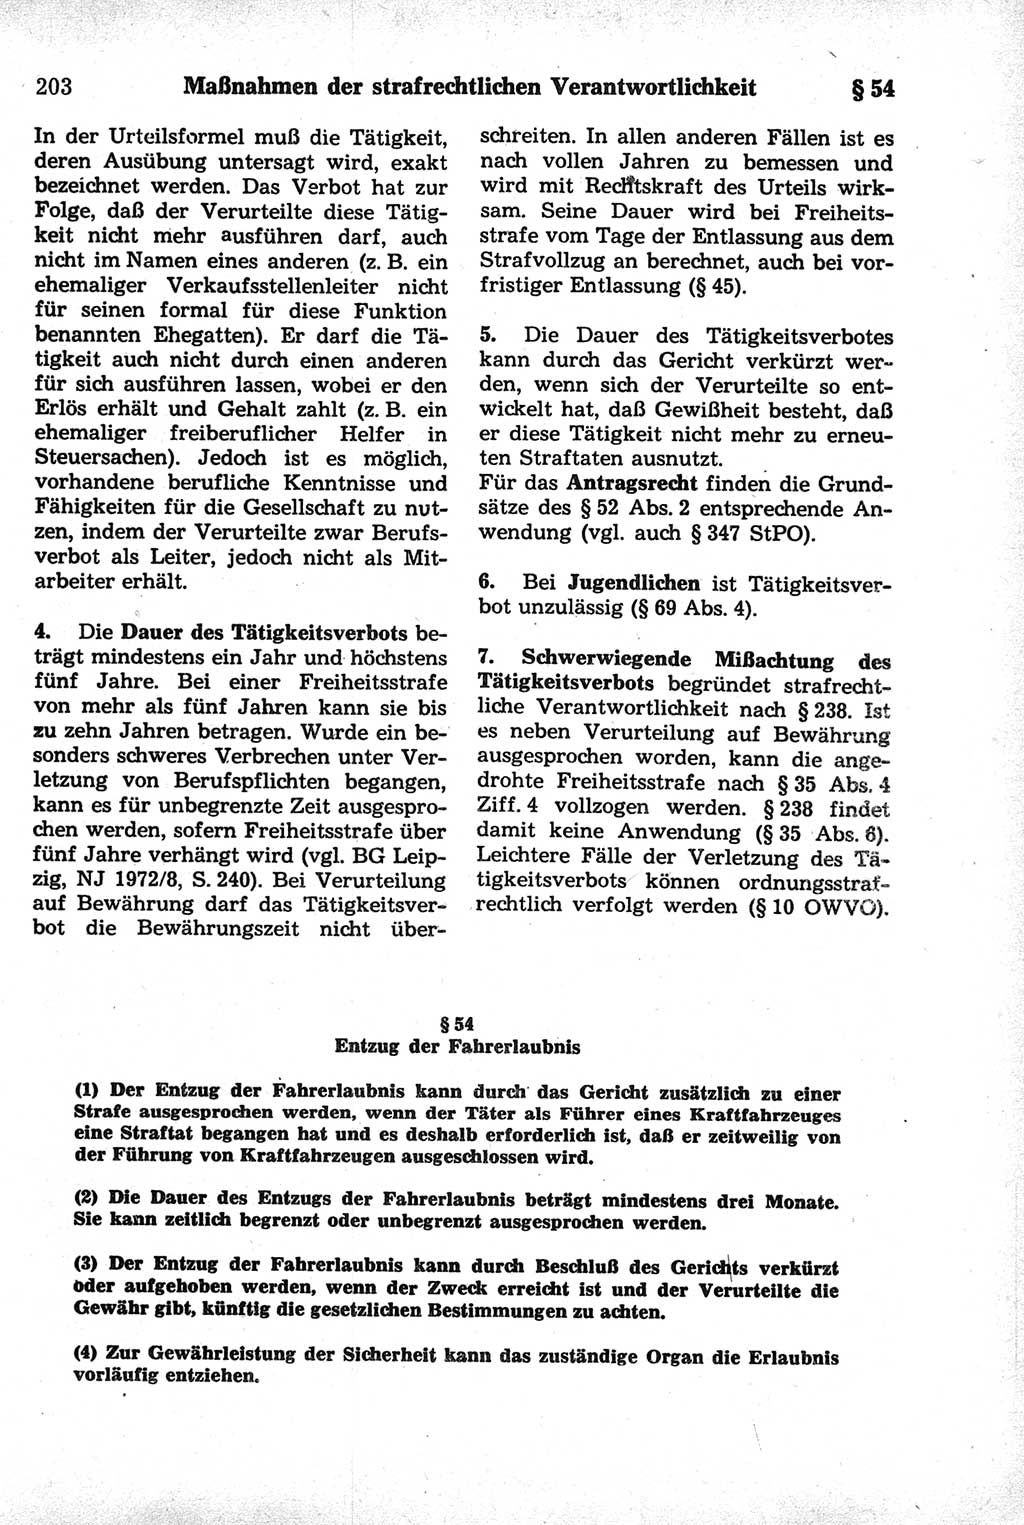 Strafrecht der Deutschen Demokratischen Republik (DDR), Kommentar zum Strafgesetzbuch (StGB) 1981, Seite 203 (Strafr. DDR Komm. StGB 1981, S. 203)